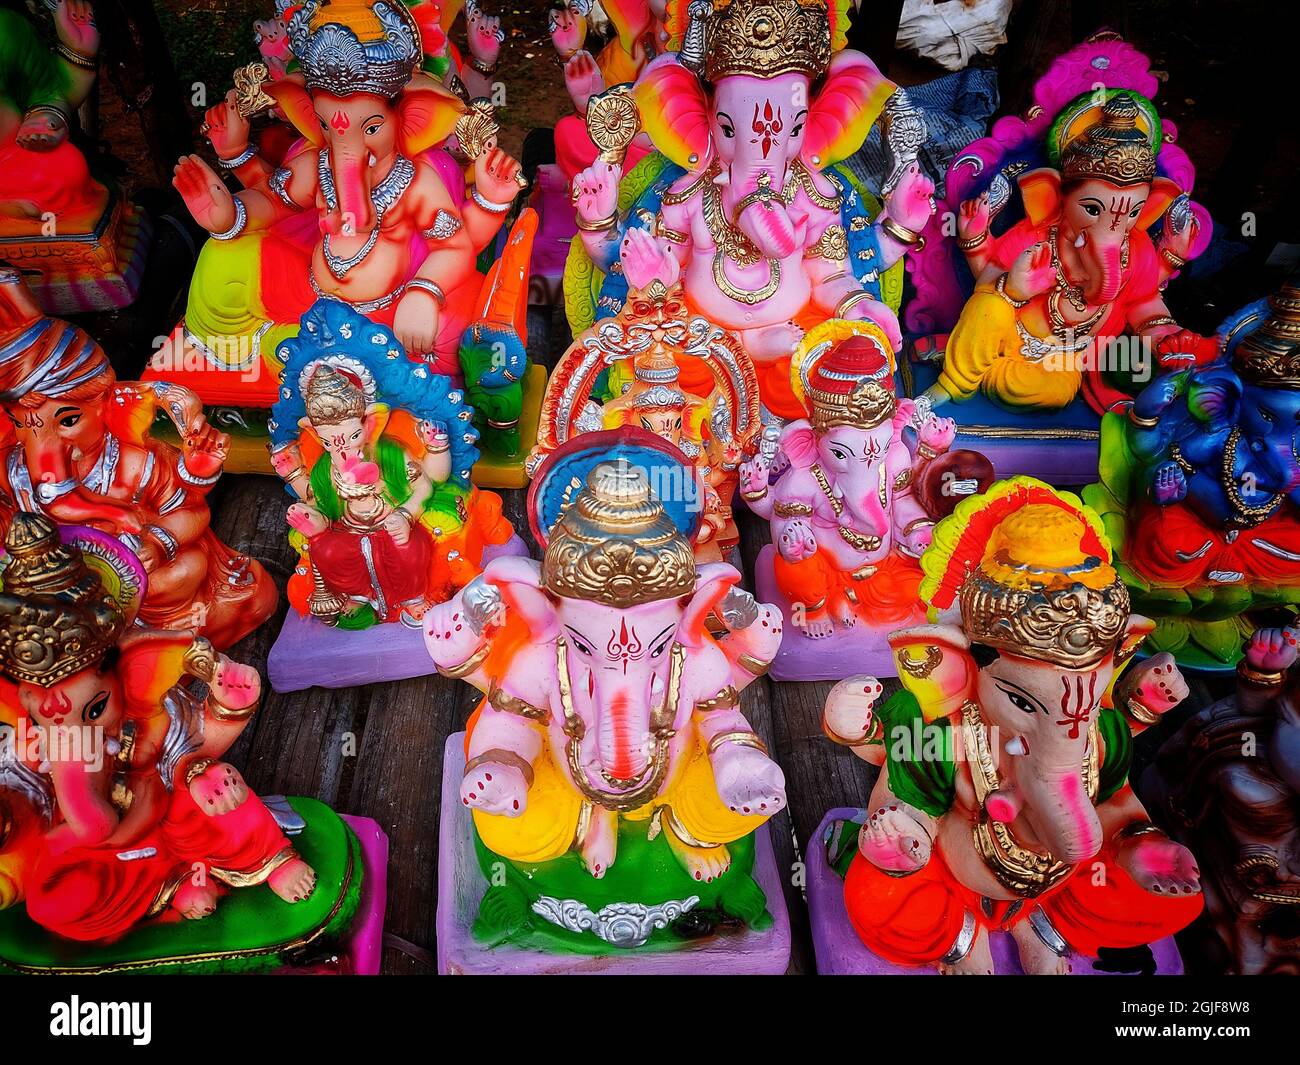 beautiful idol of lord ganesha during ganesh chaturthi celebration ...